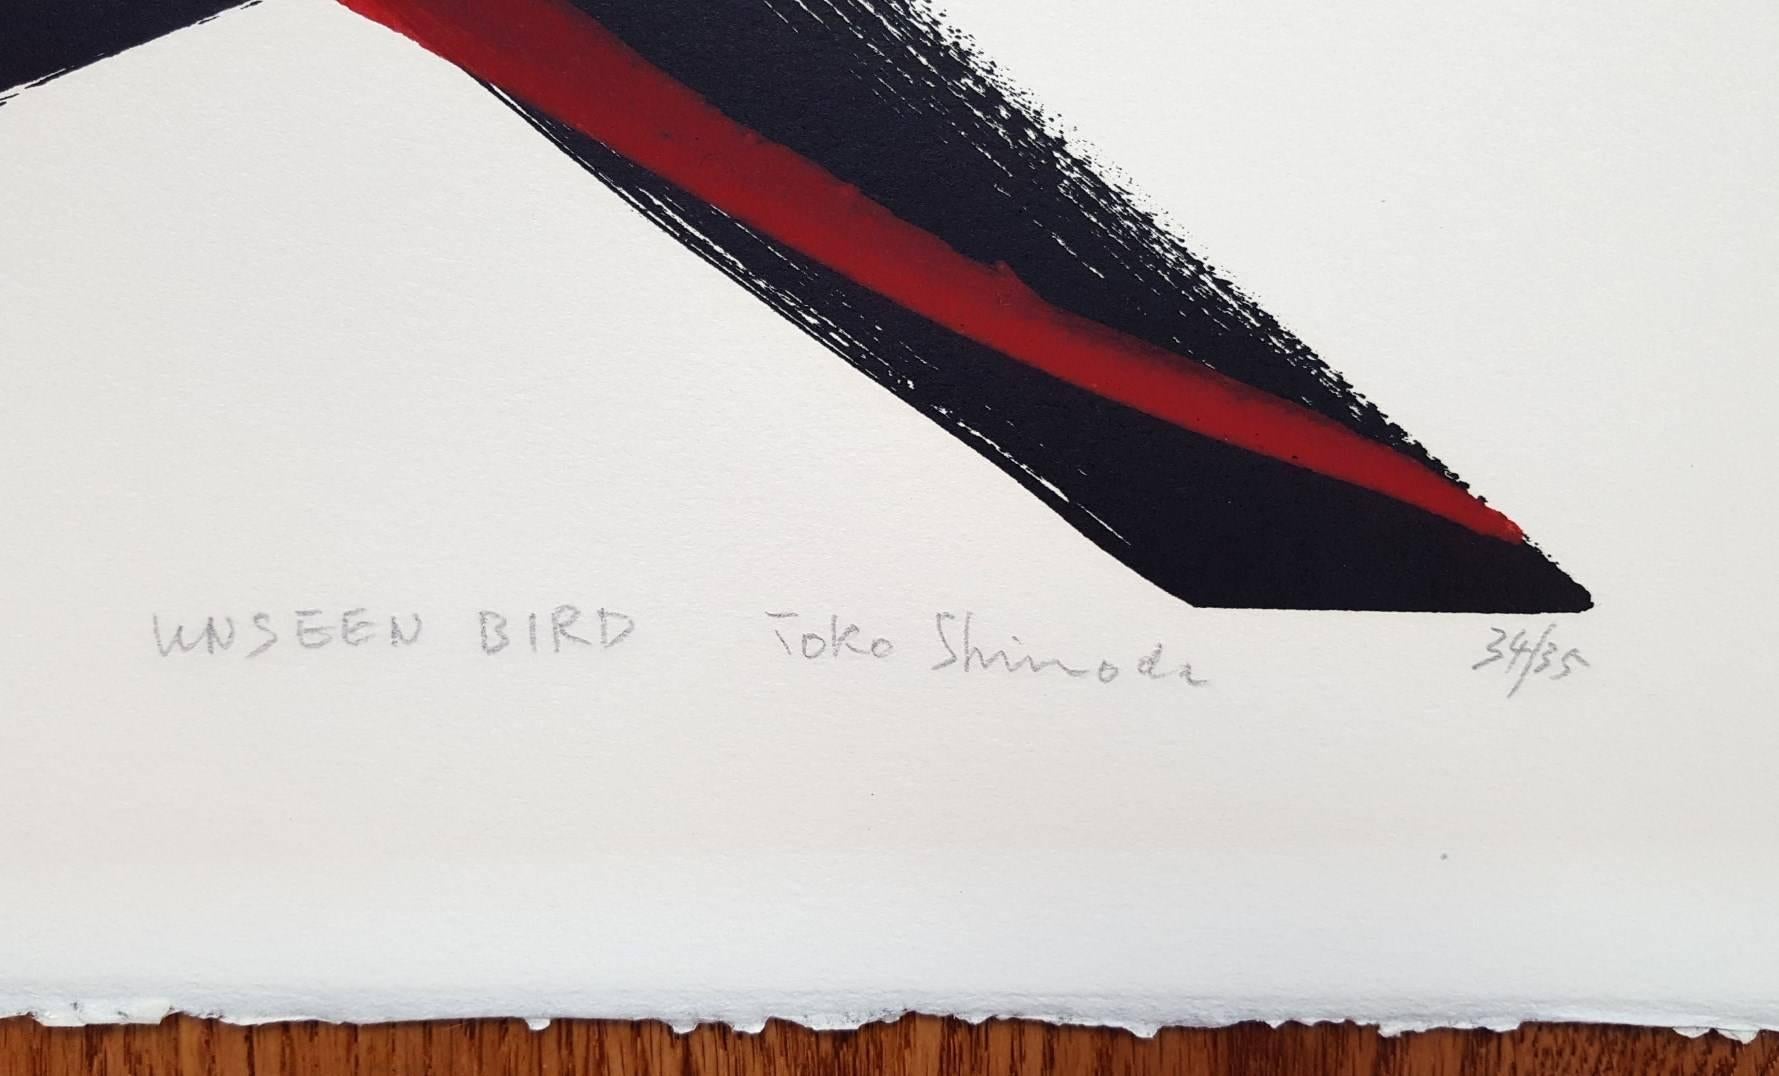 Unseen Bird - Print by Toko Shinoda